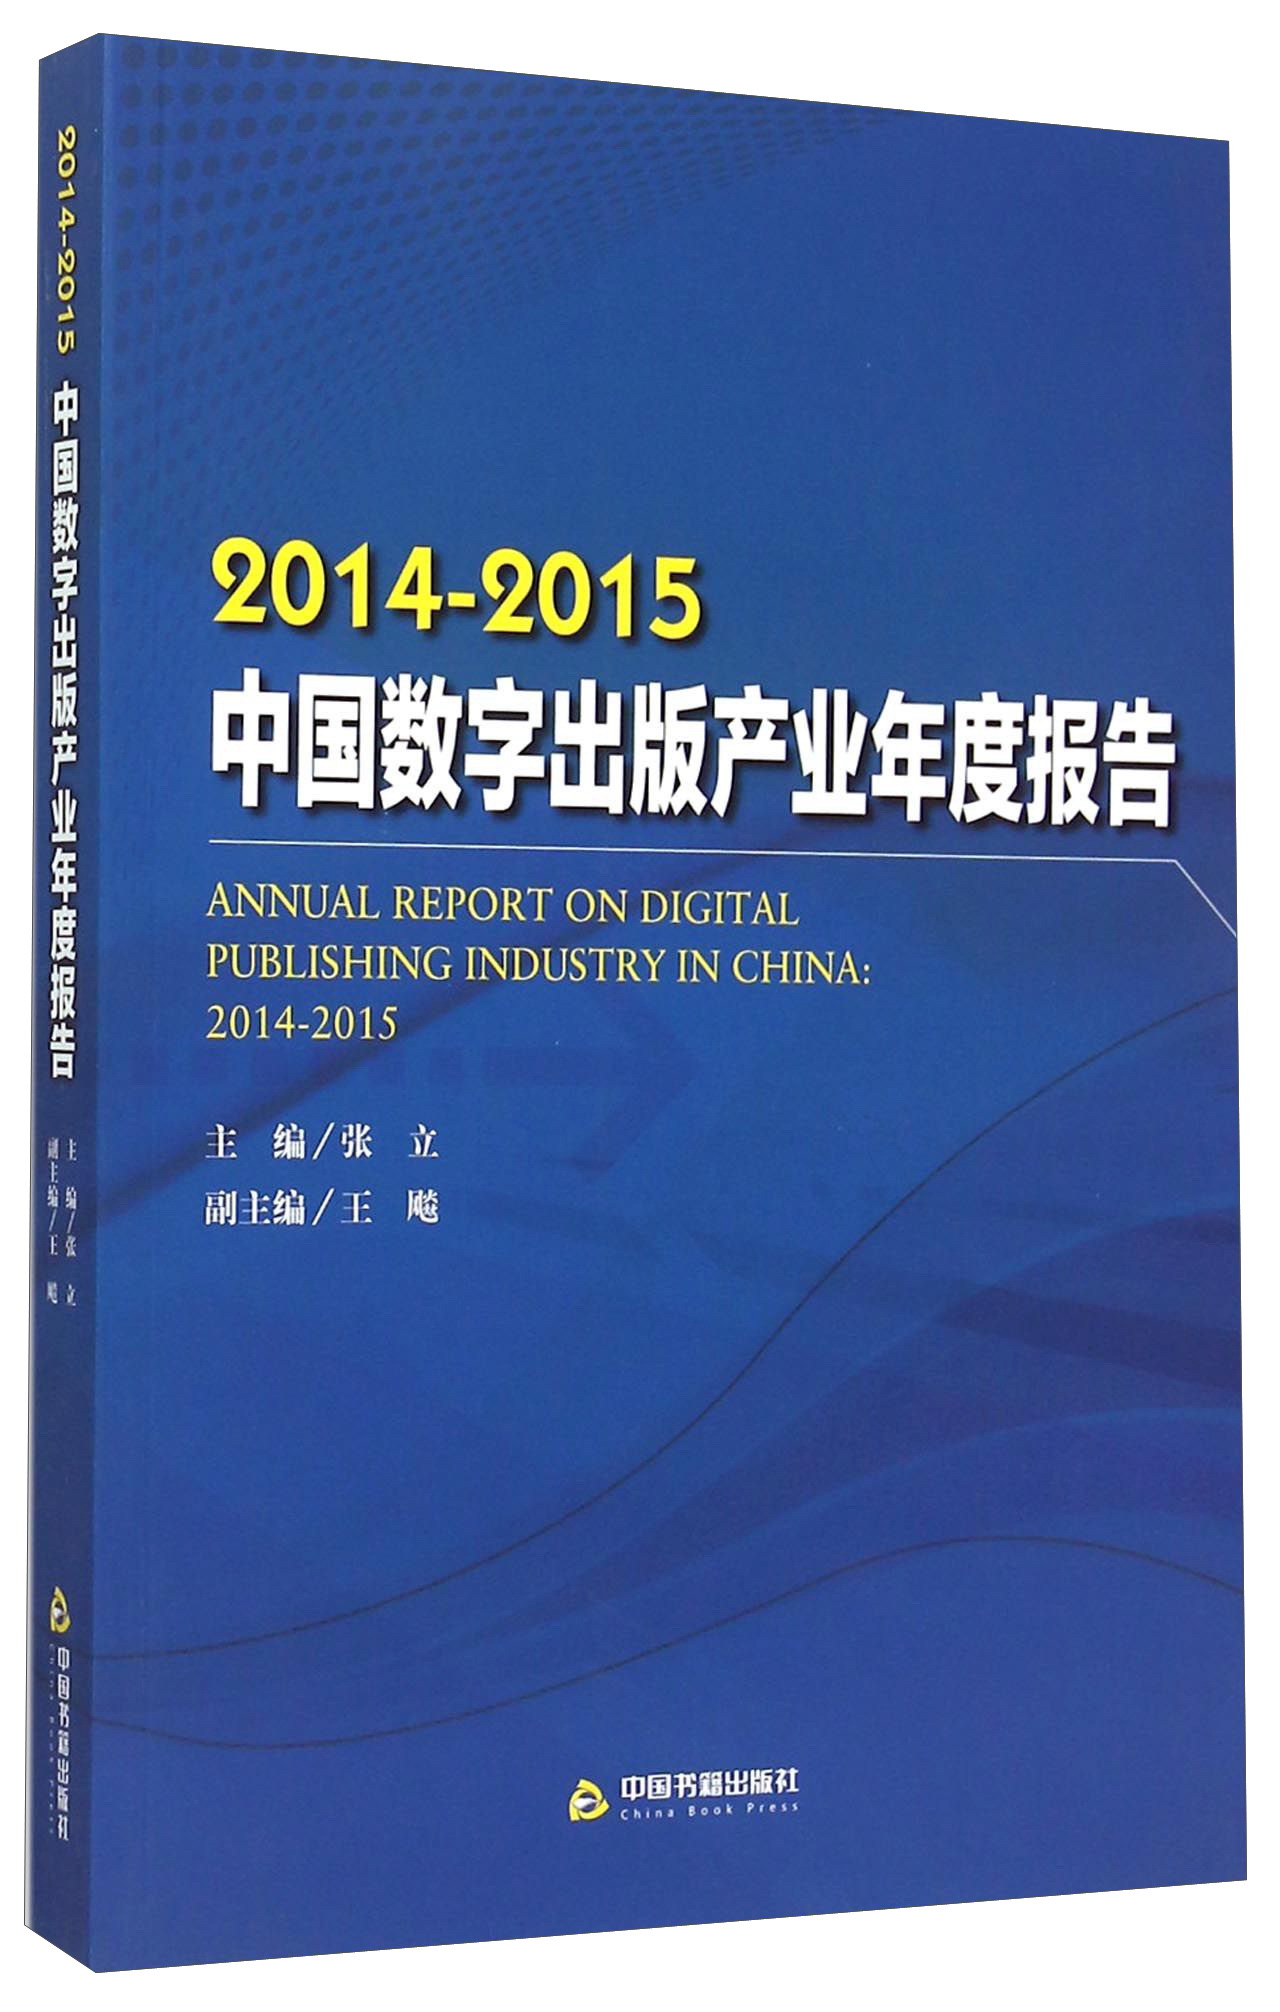 2014-2015中国数字出版产业年度报告 azw3格式下载